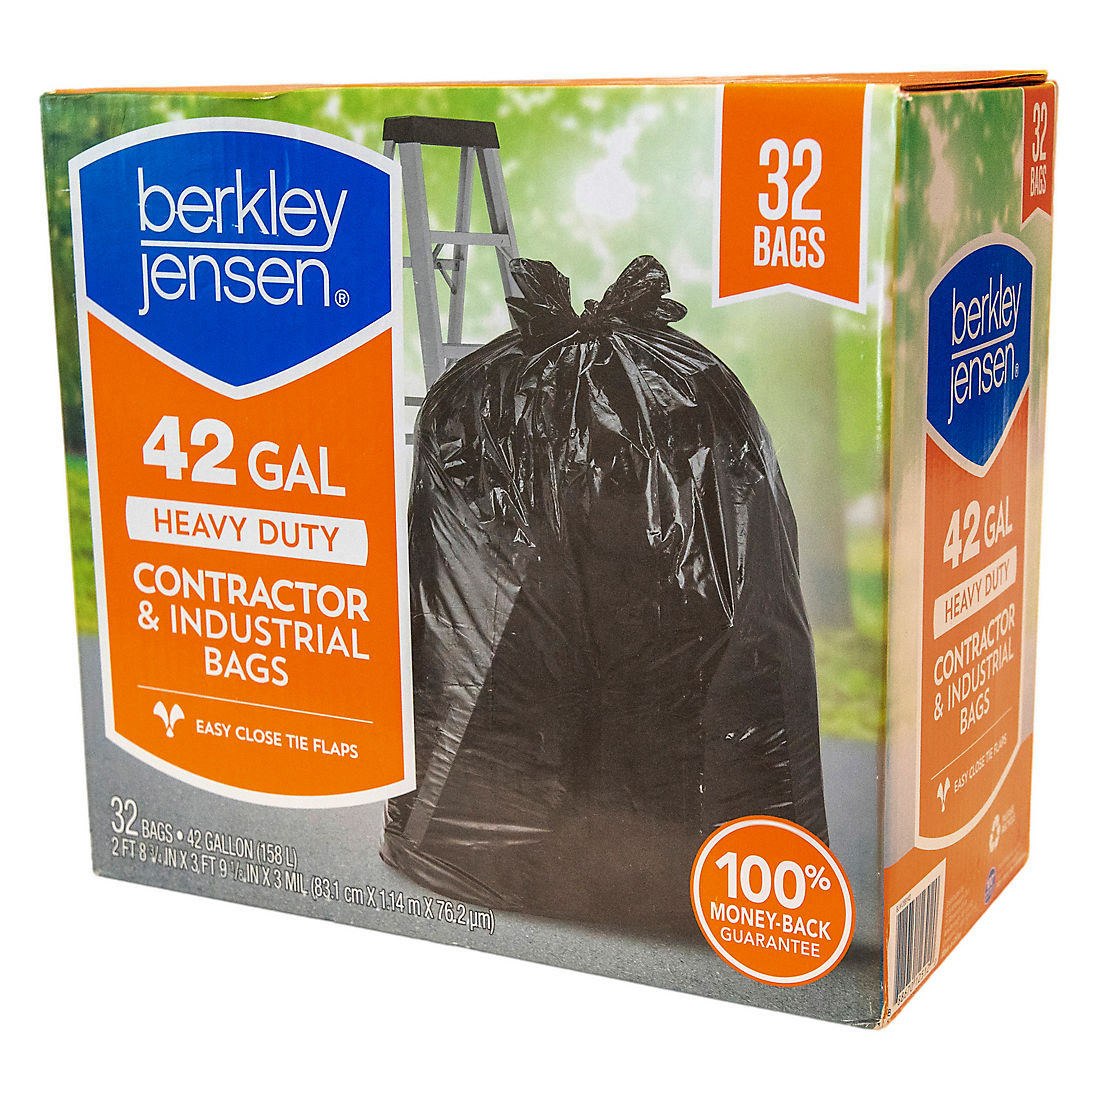 Berkley Jensen Heavy Duty Contractor Bags